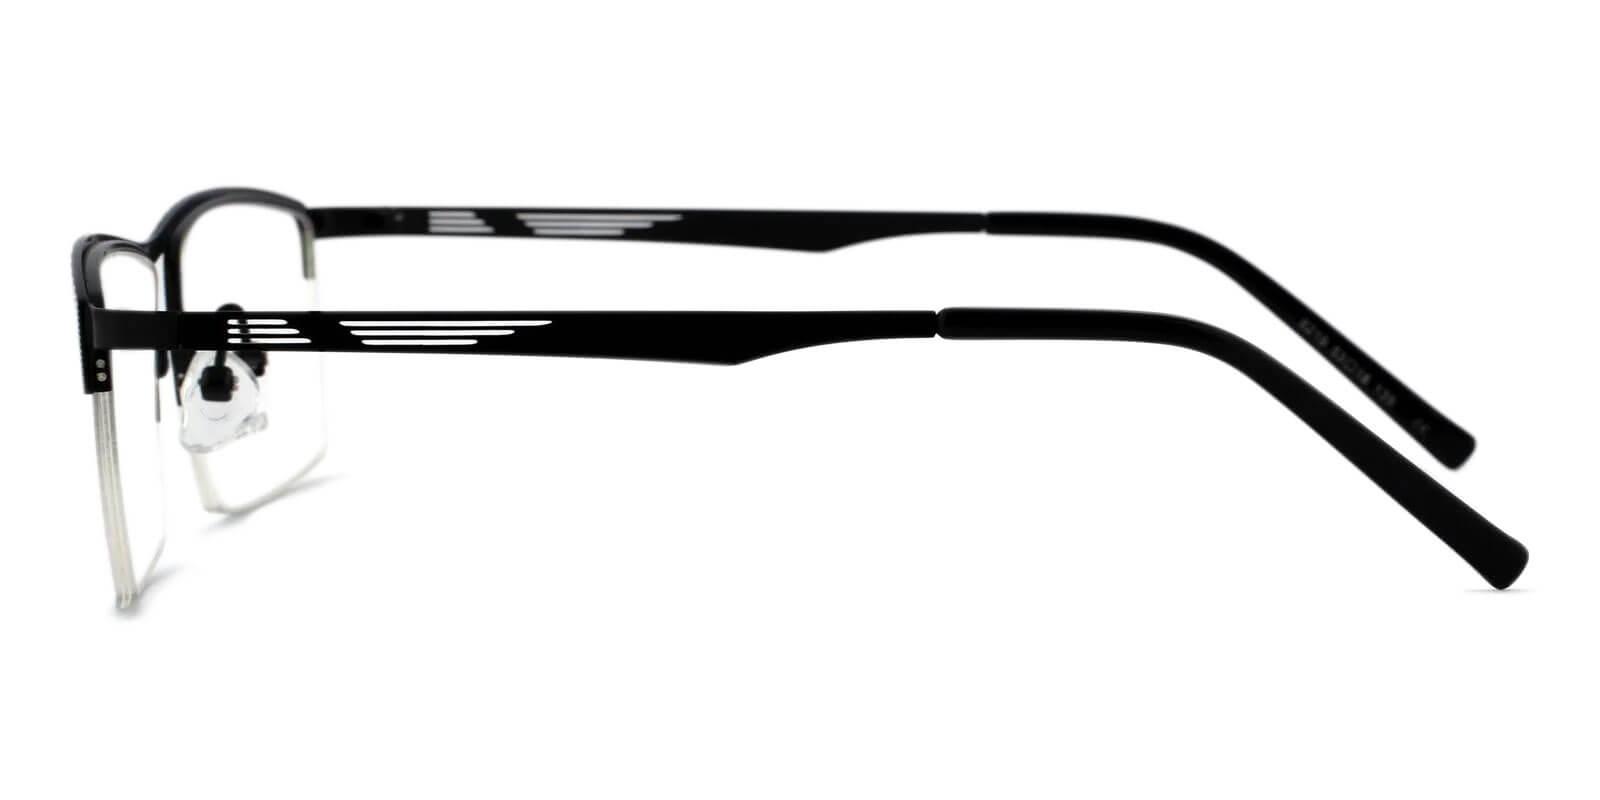 Henry Black Metal Eyeglasses , NosePads Frames from ABBE Glasses